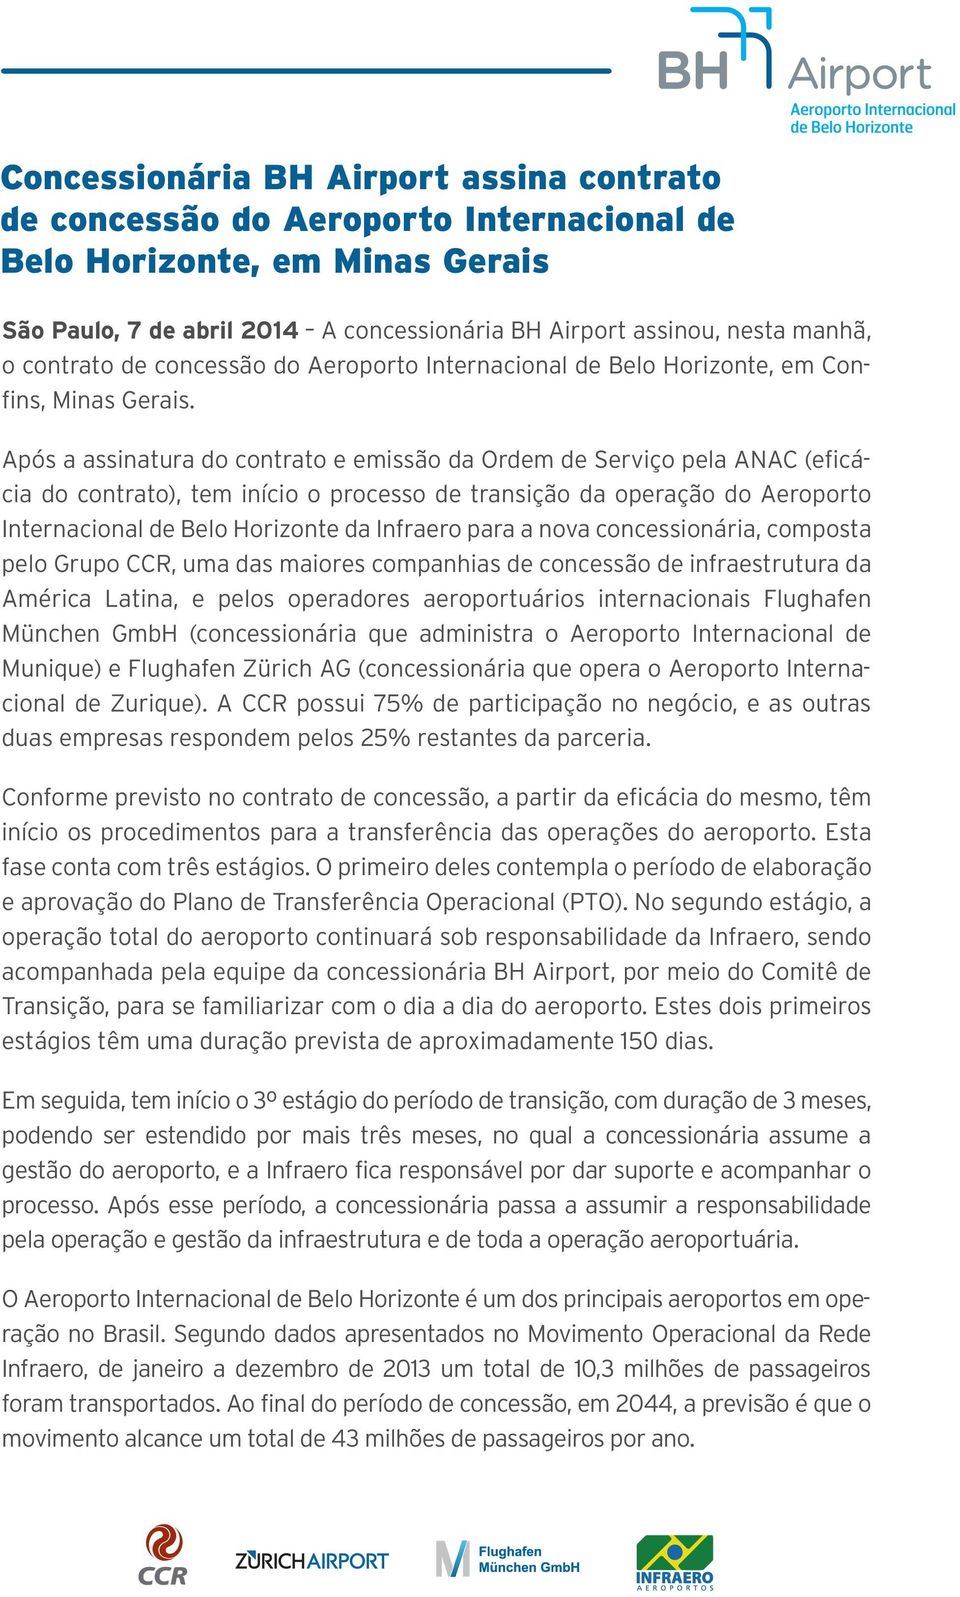 Após a assinatura do contrato e emissão da Ordem de Serviço pela ANAC (eficácia do contrato), tem início o processo de transição da operação do Aeroporto Internacional de Belo Horizonte da Infraero